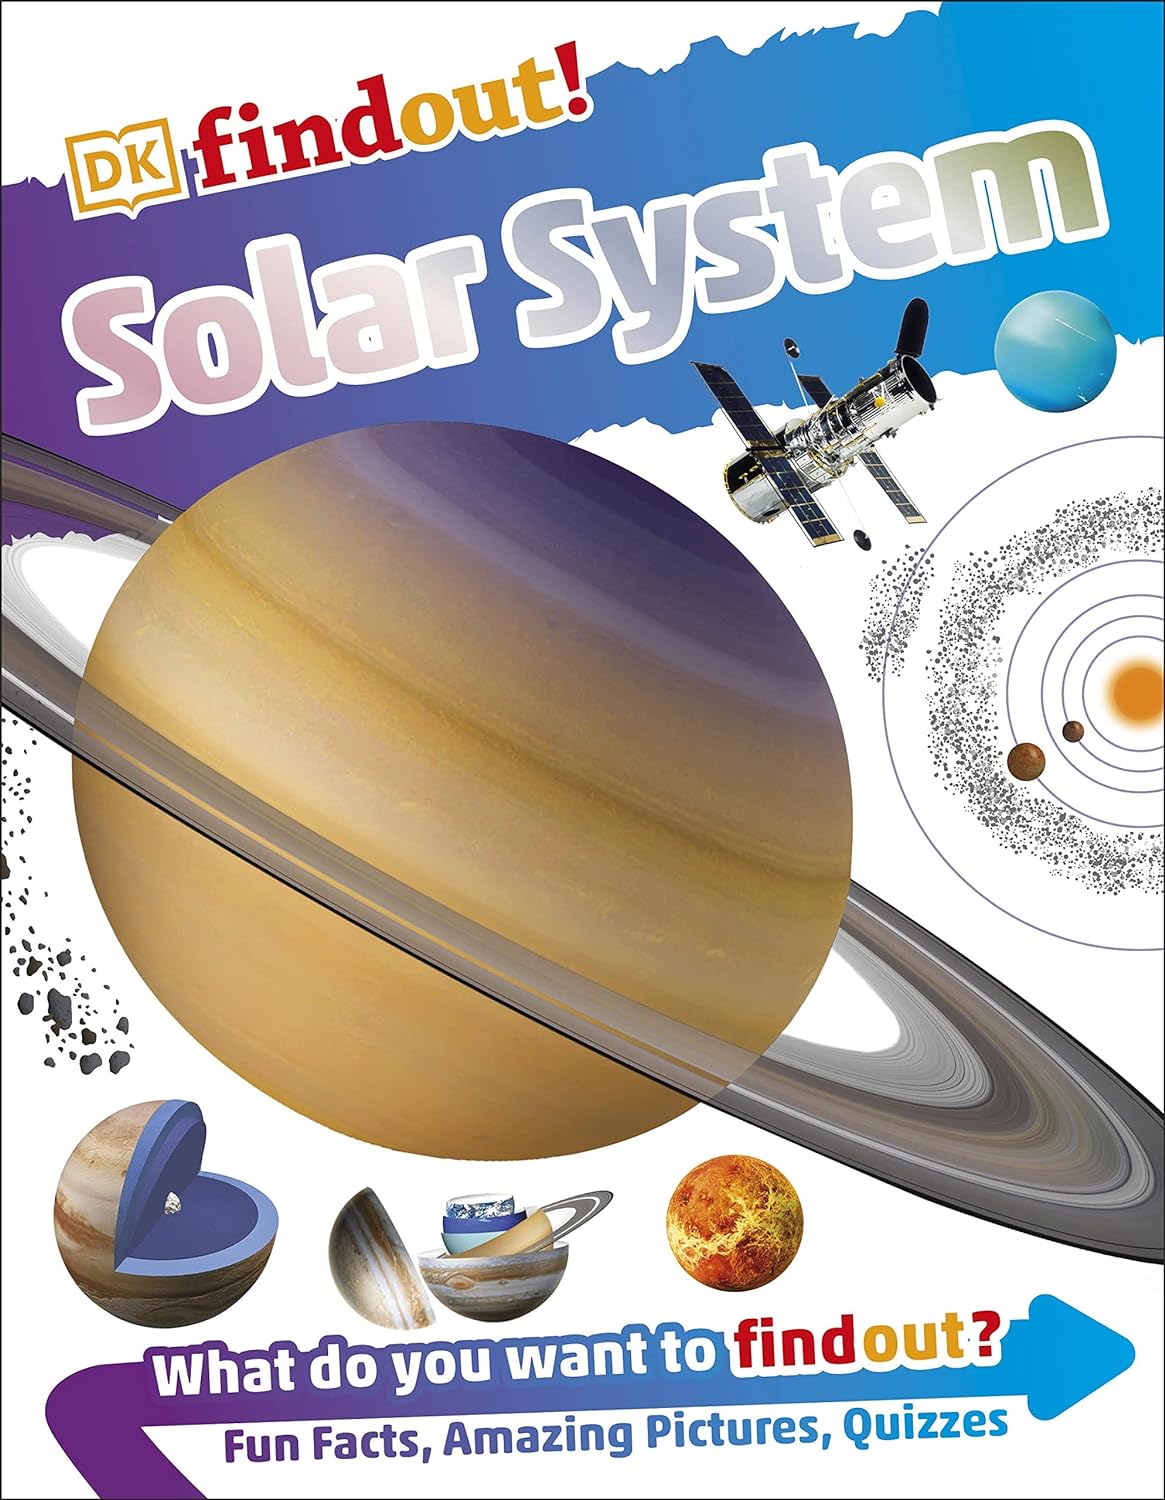 Dkfindout!: Solar System